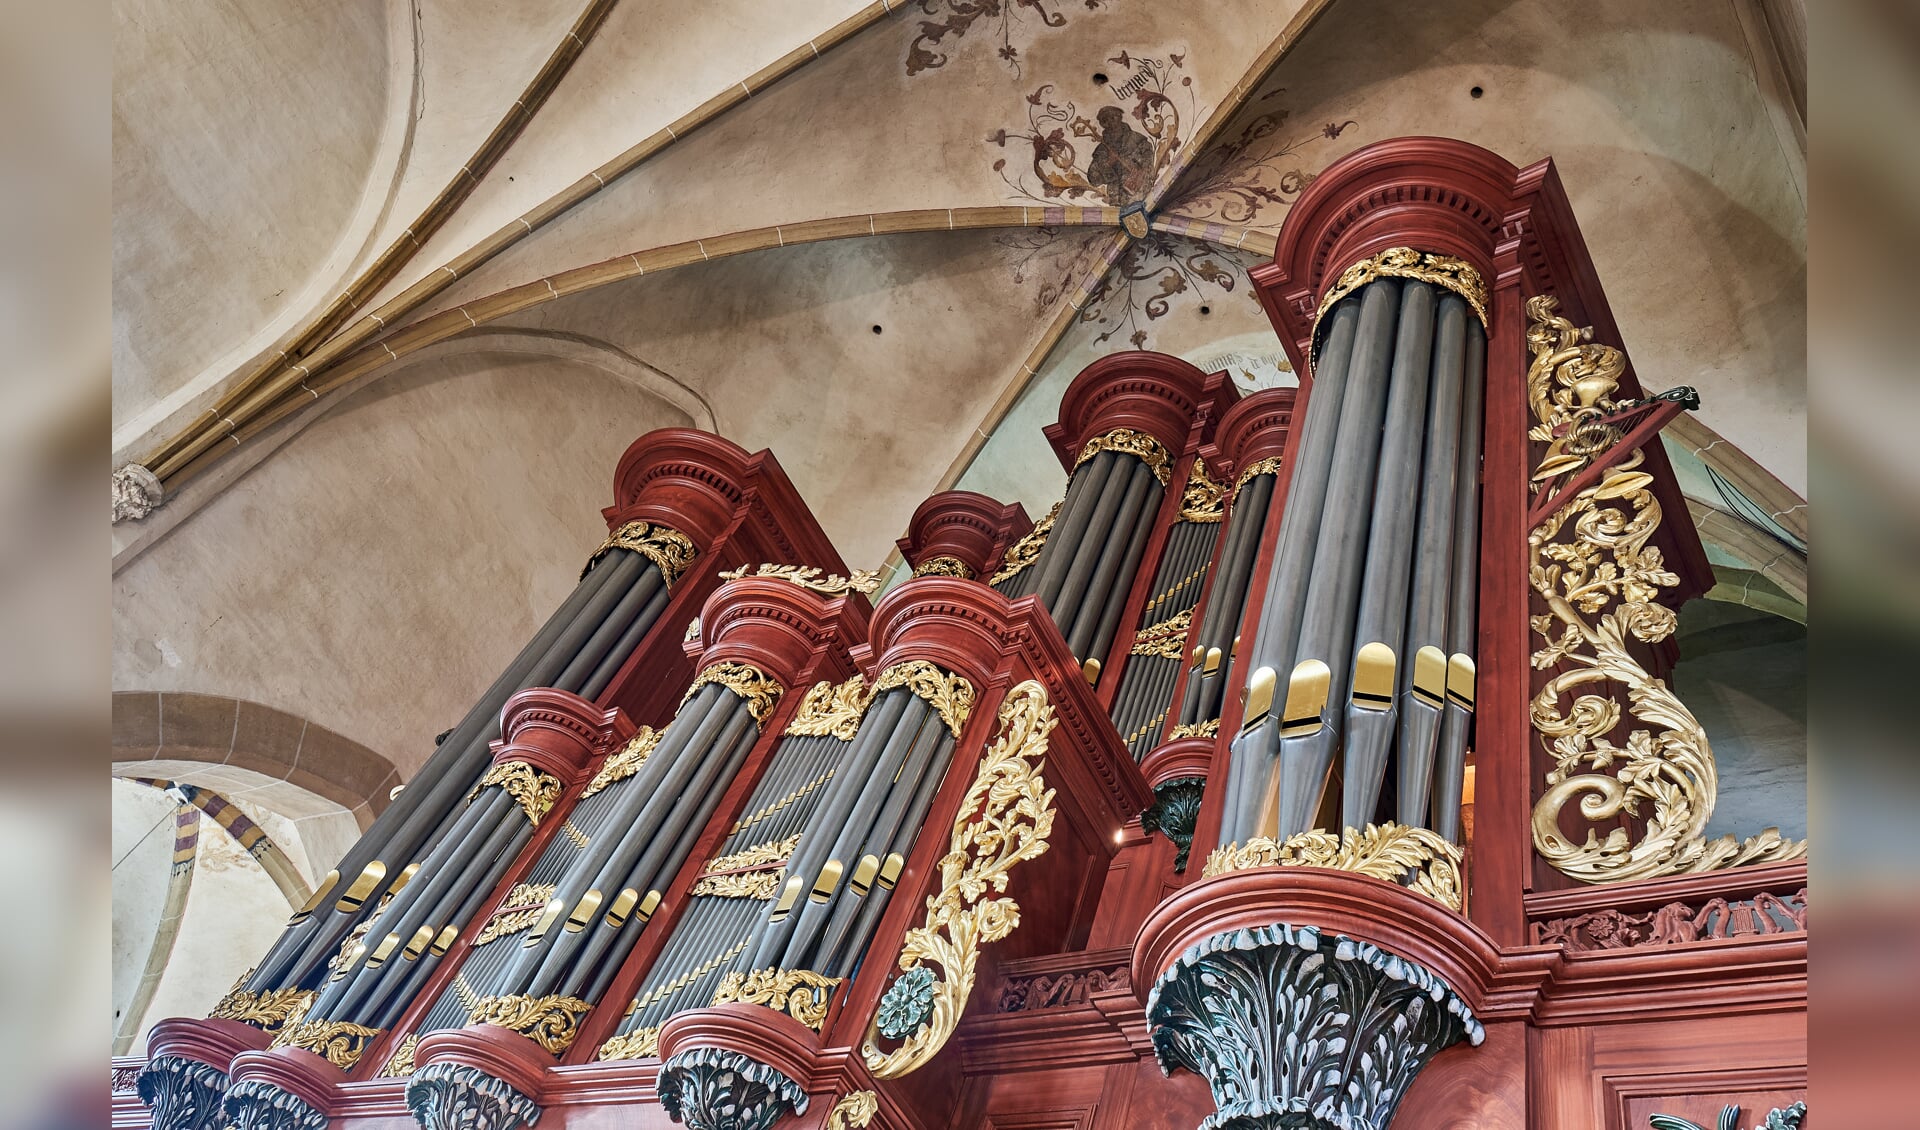 Het orgel in de Jacobskerk. Foto: Douwe Haandrikman